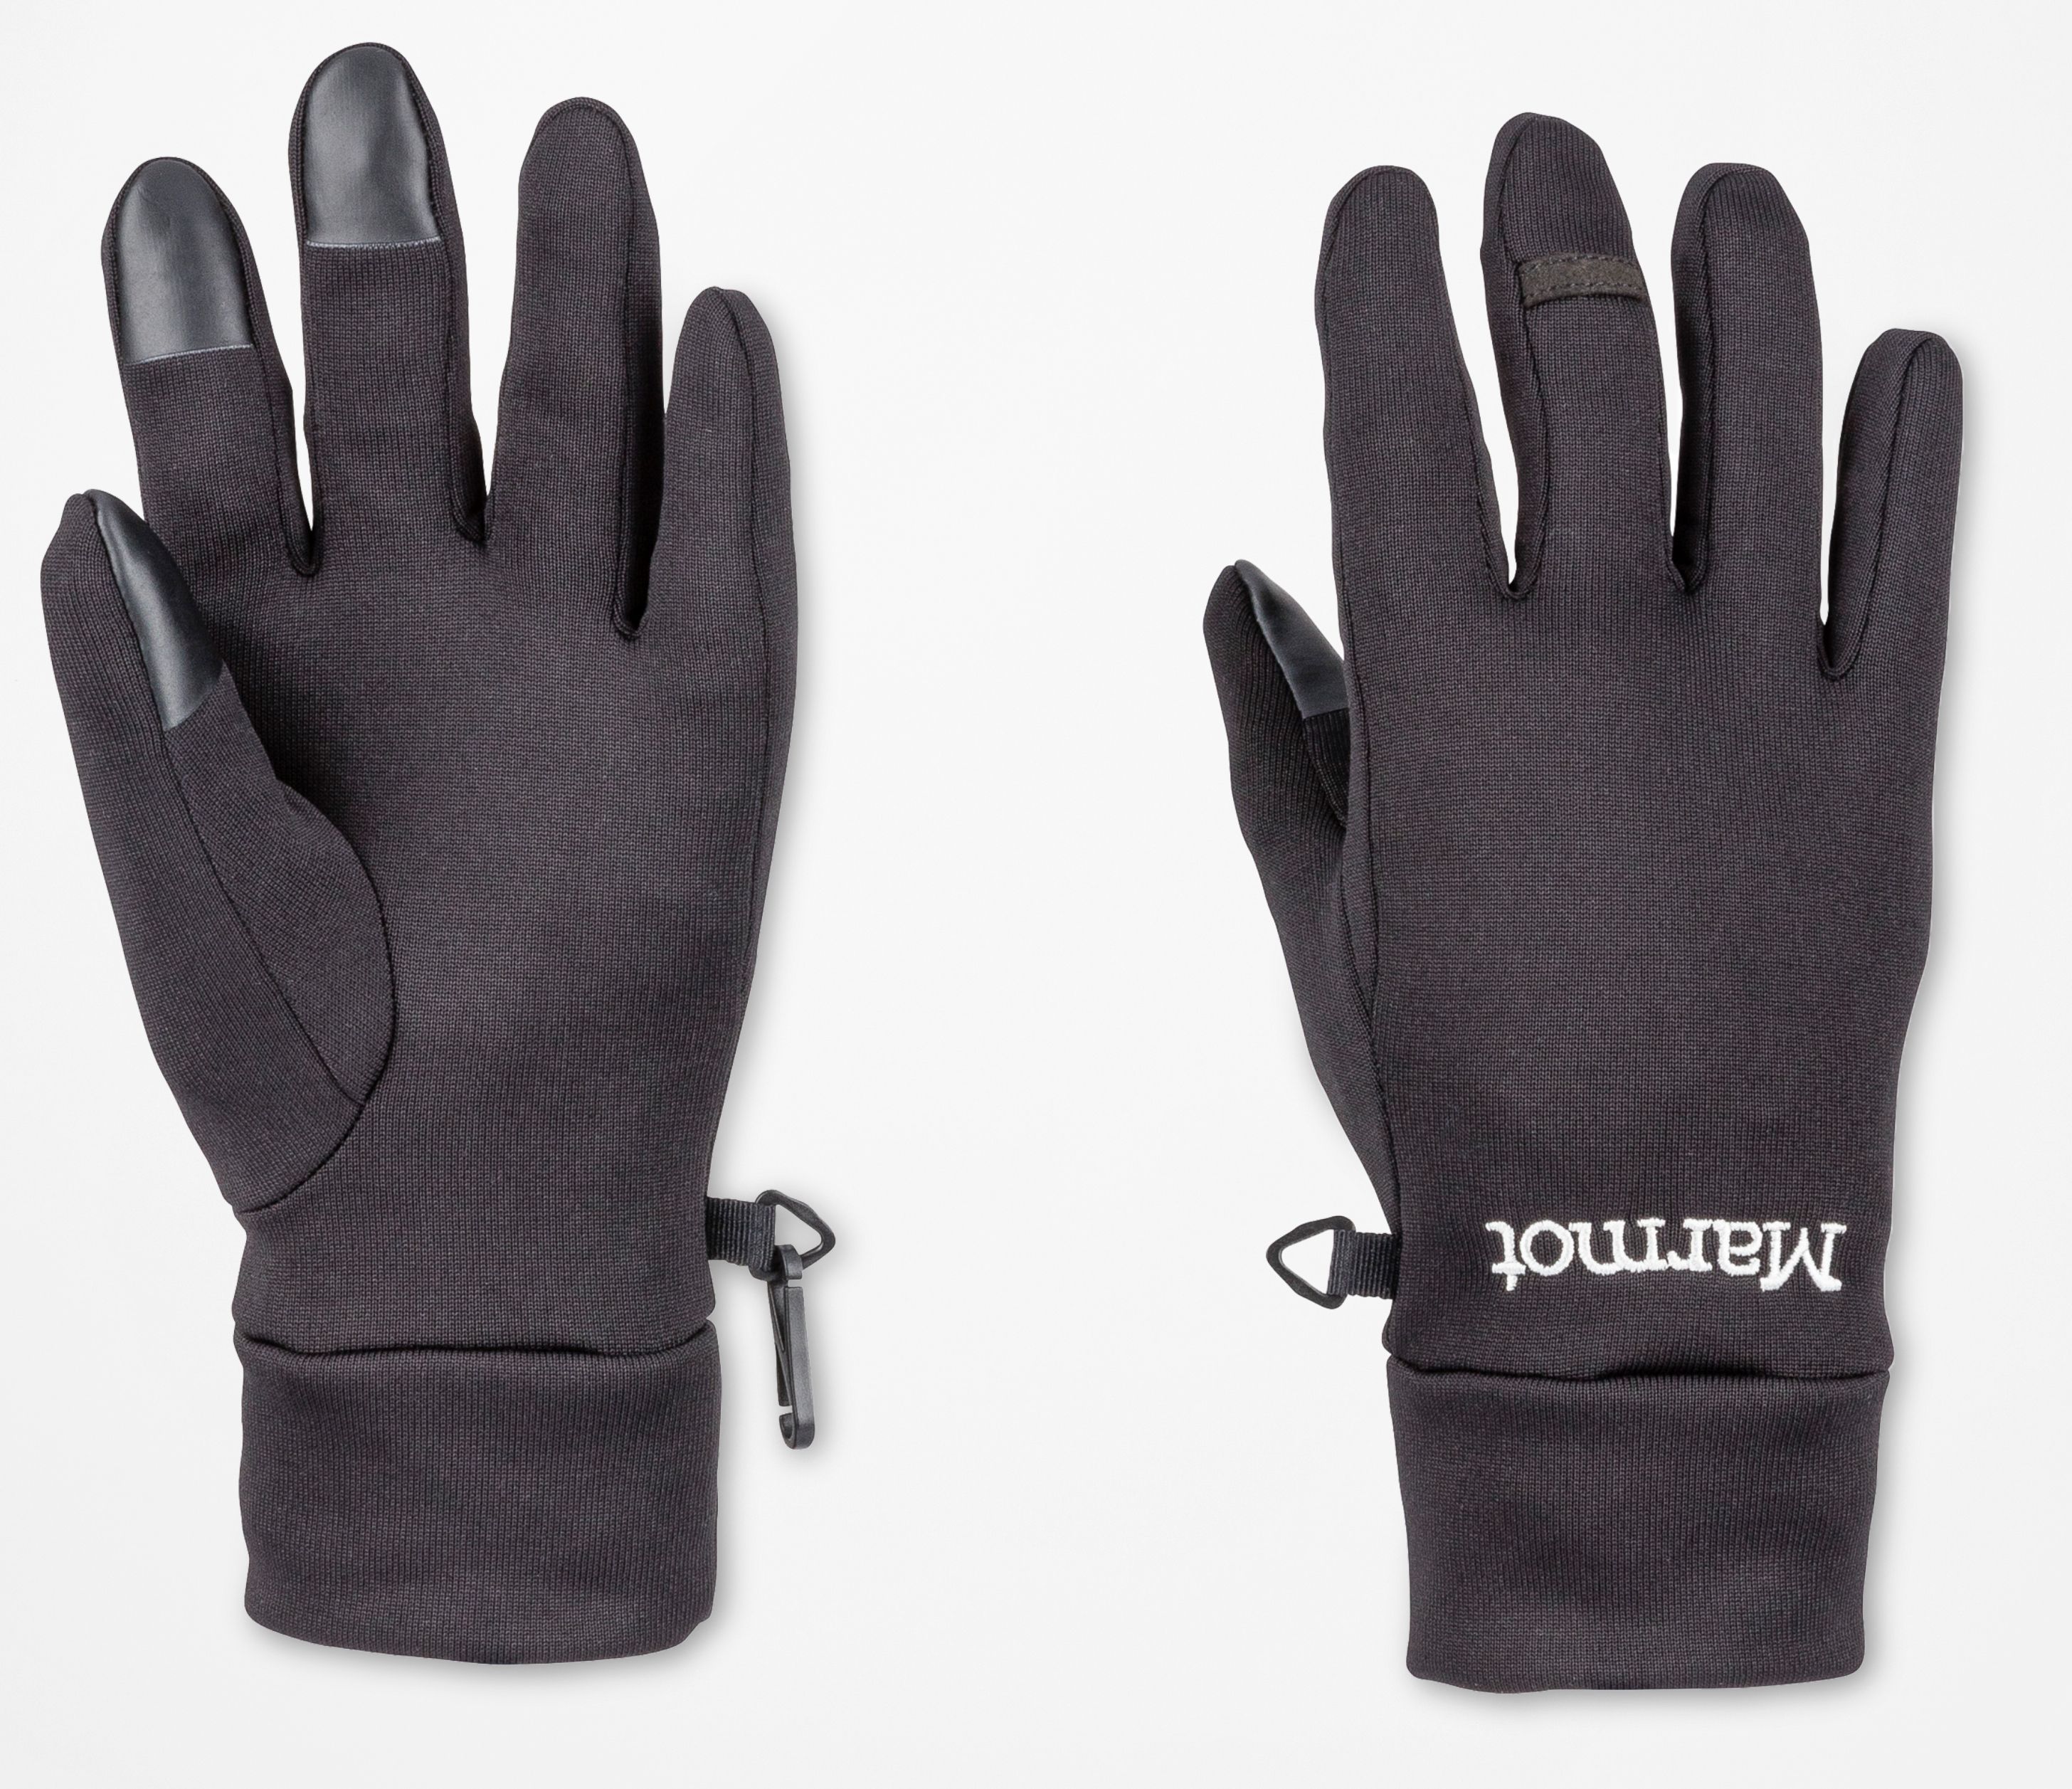 Перчатки connect. Перчатки Мармот. Marmot перчатки WM'S Bretton Glove. Перчатки Power stretch. Перчатки из Polartec Marmot.